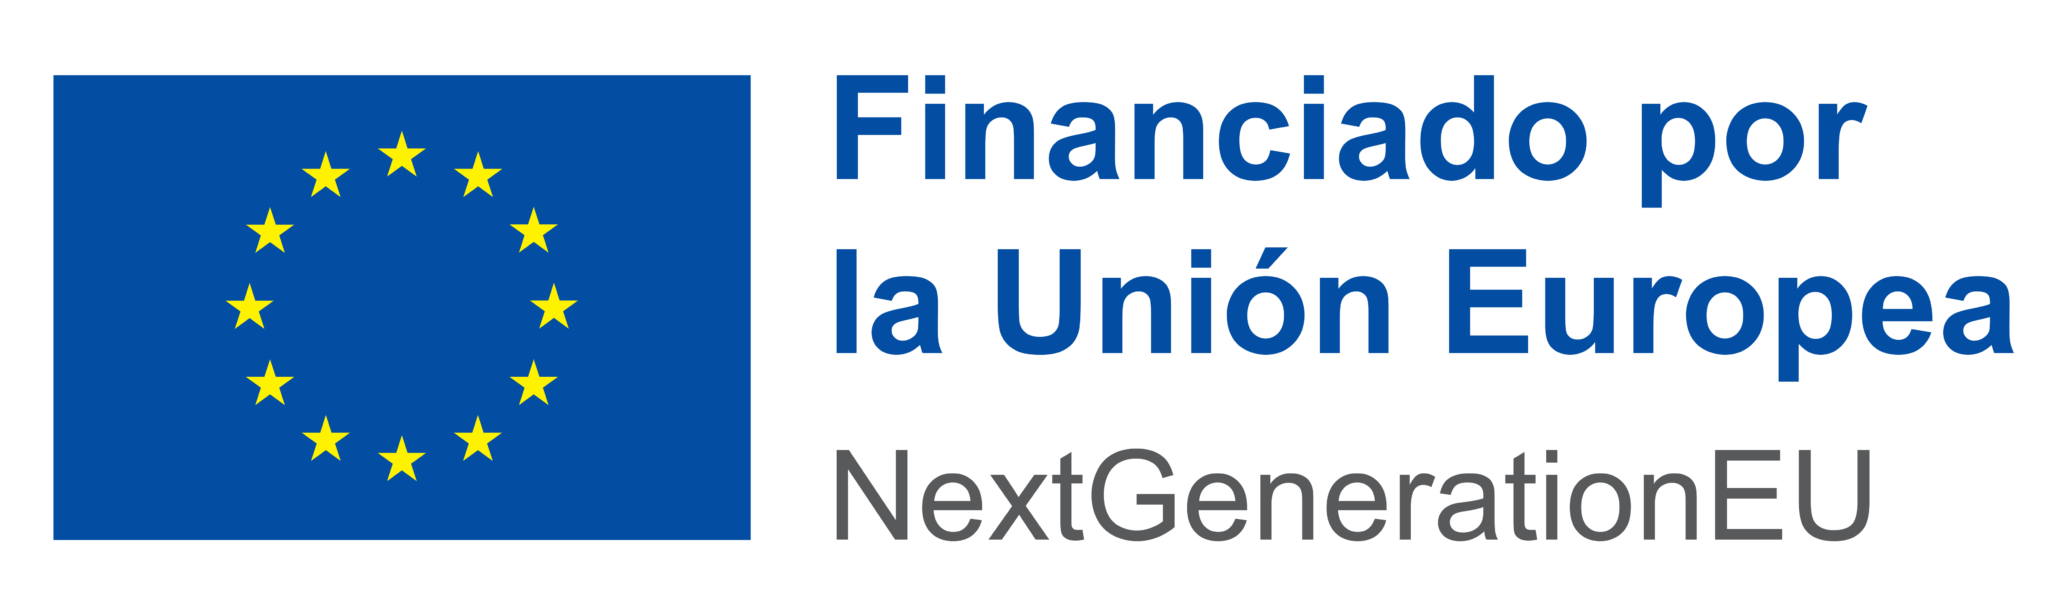 Logotipo de financiado por la unión europea nextgenerationeu